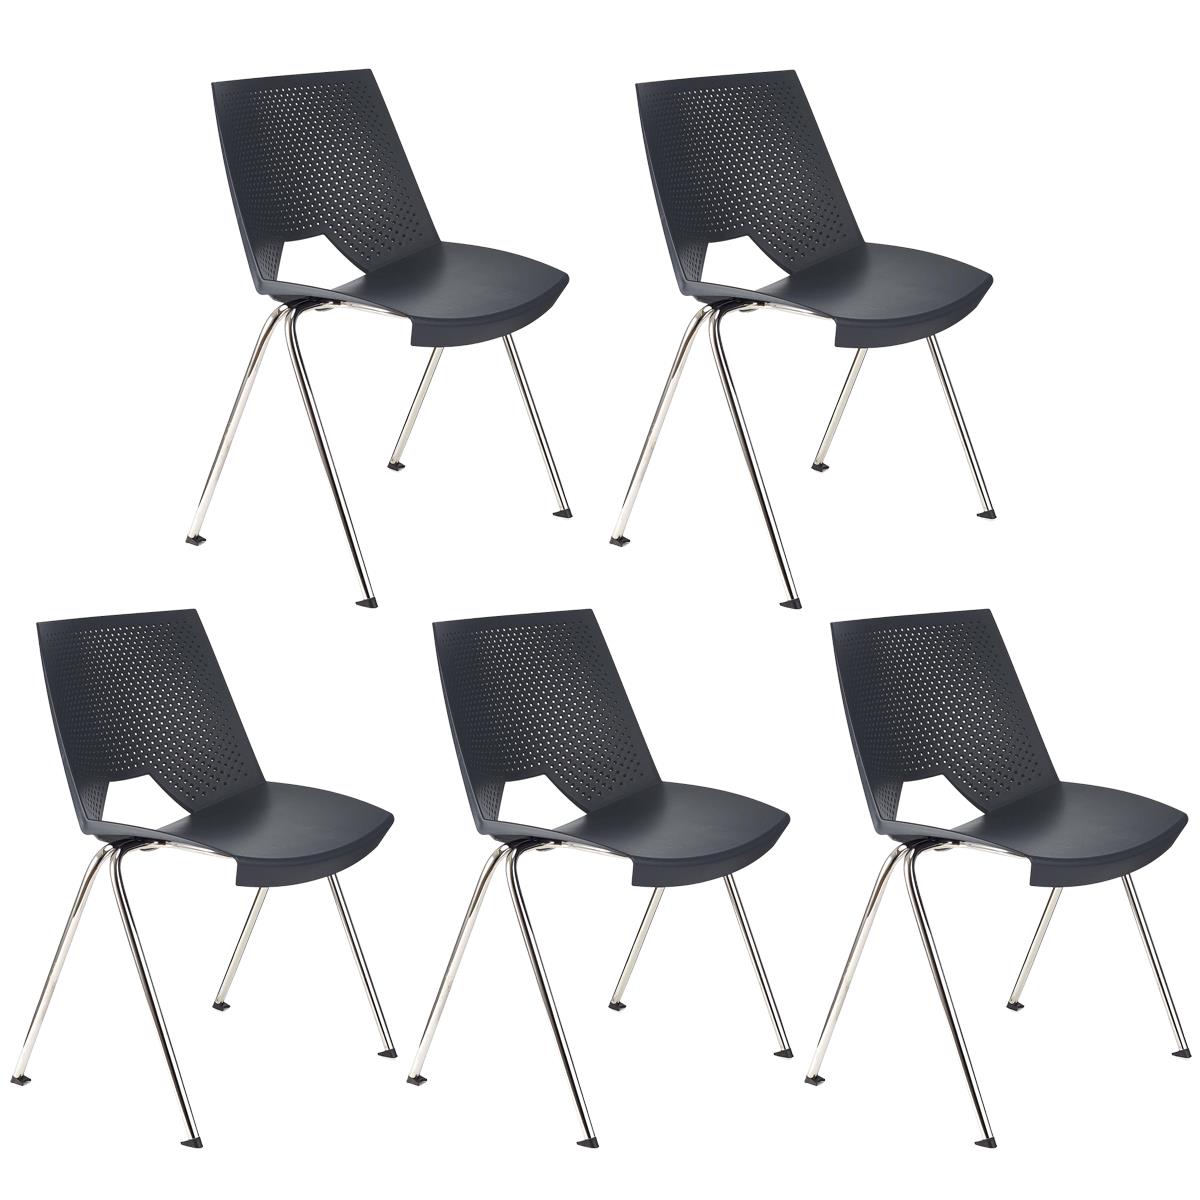 Lote 5 Cadeiras de Visita ENZO, Confortável e Prática, Empilhável, Cor Cinzento